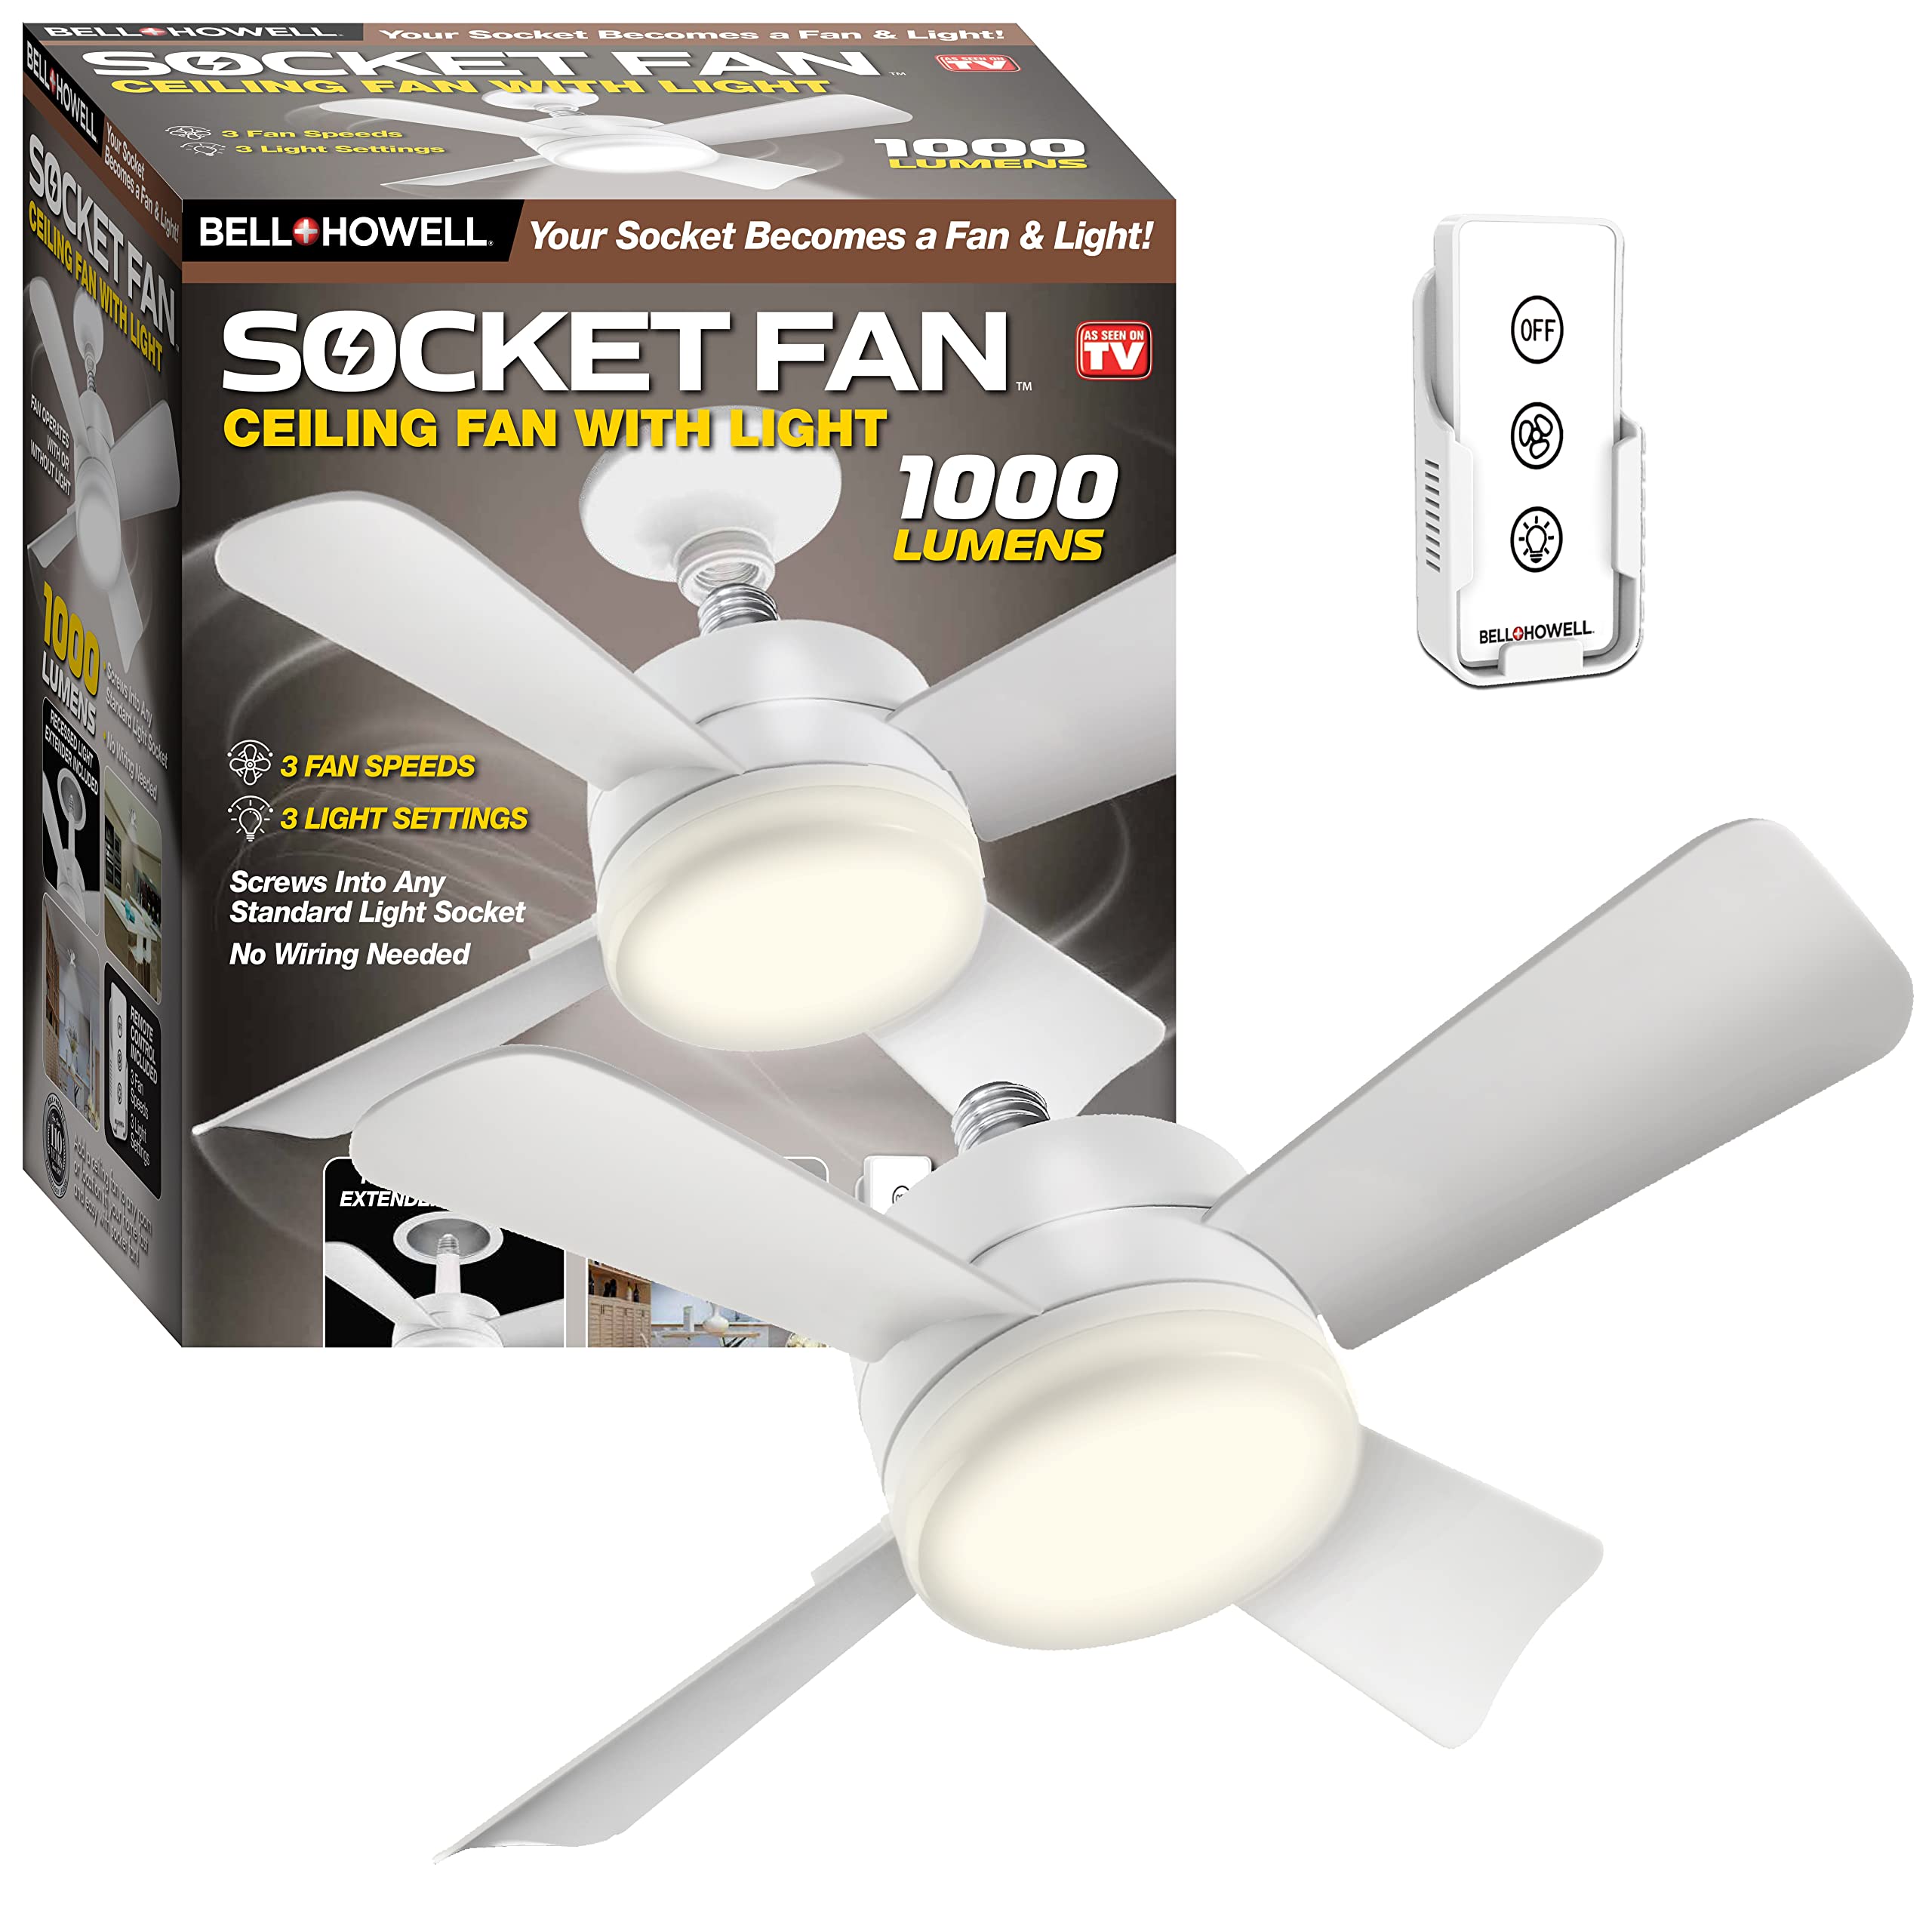  Bell+Howell Socket Fan Ceiling Fan with Light, 1000 Lumens Ceiling Fan with Light & Remote, Screws into Any Light Socket No Wiring Needed, 3 Fan Speeds 3 Light Settings, College Dorm Room Essentials...